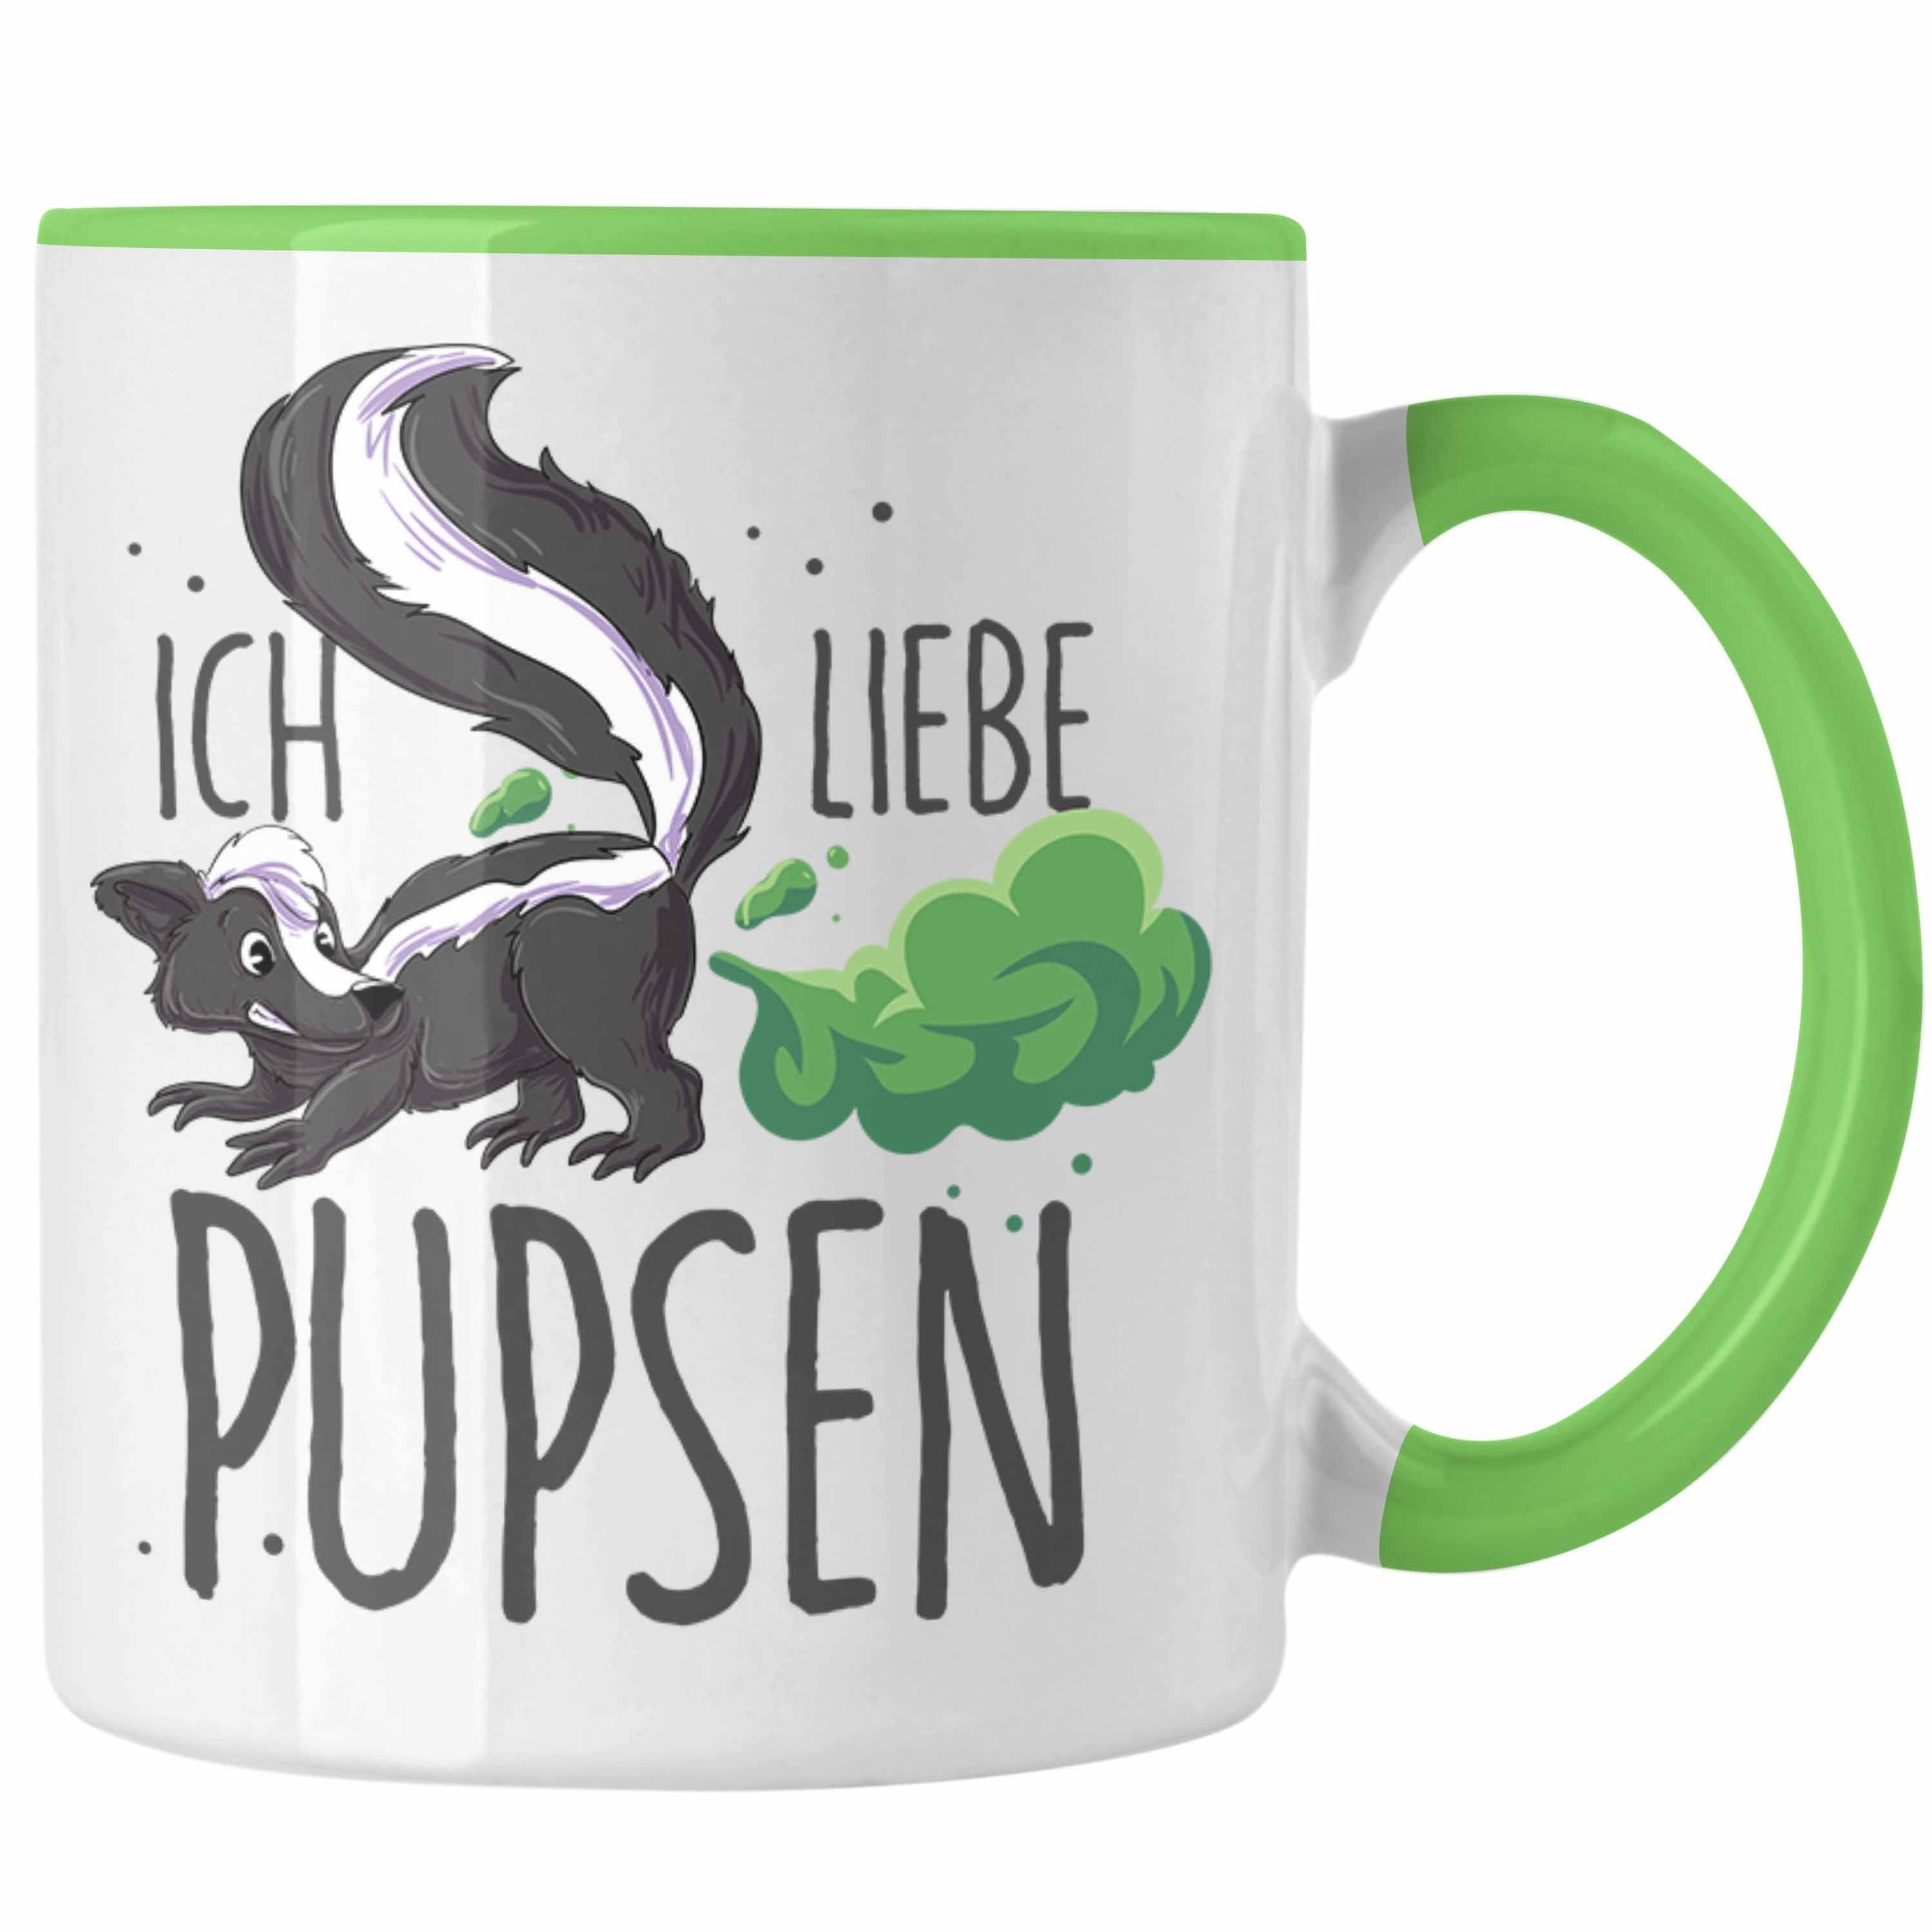 Trendation Tasse Lustige Tasse "Ich liebe Pupsen" mit Stinktier-Motiv Geschenkidee Gebu Grün